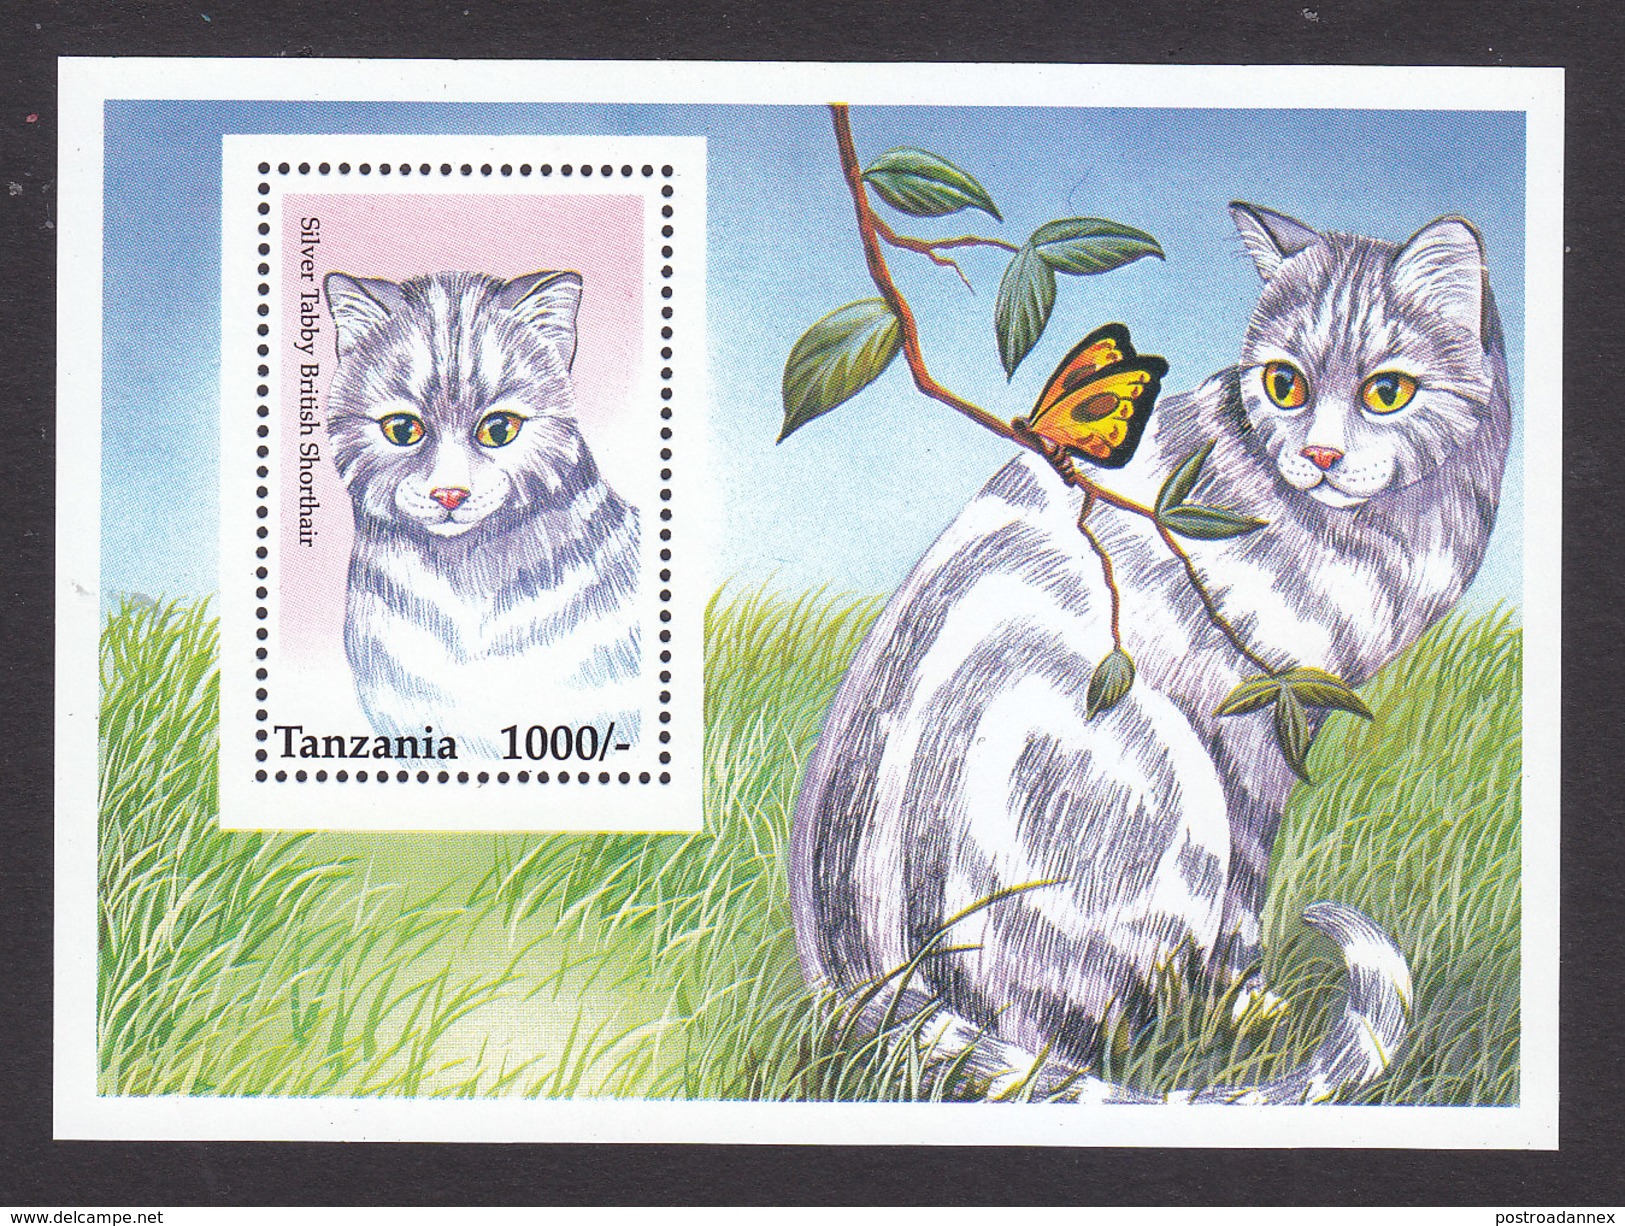 Tanzania, Scott #1438, Mint Never Hinged, Cat, Issued 1996 - Tanzania (1964-...)